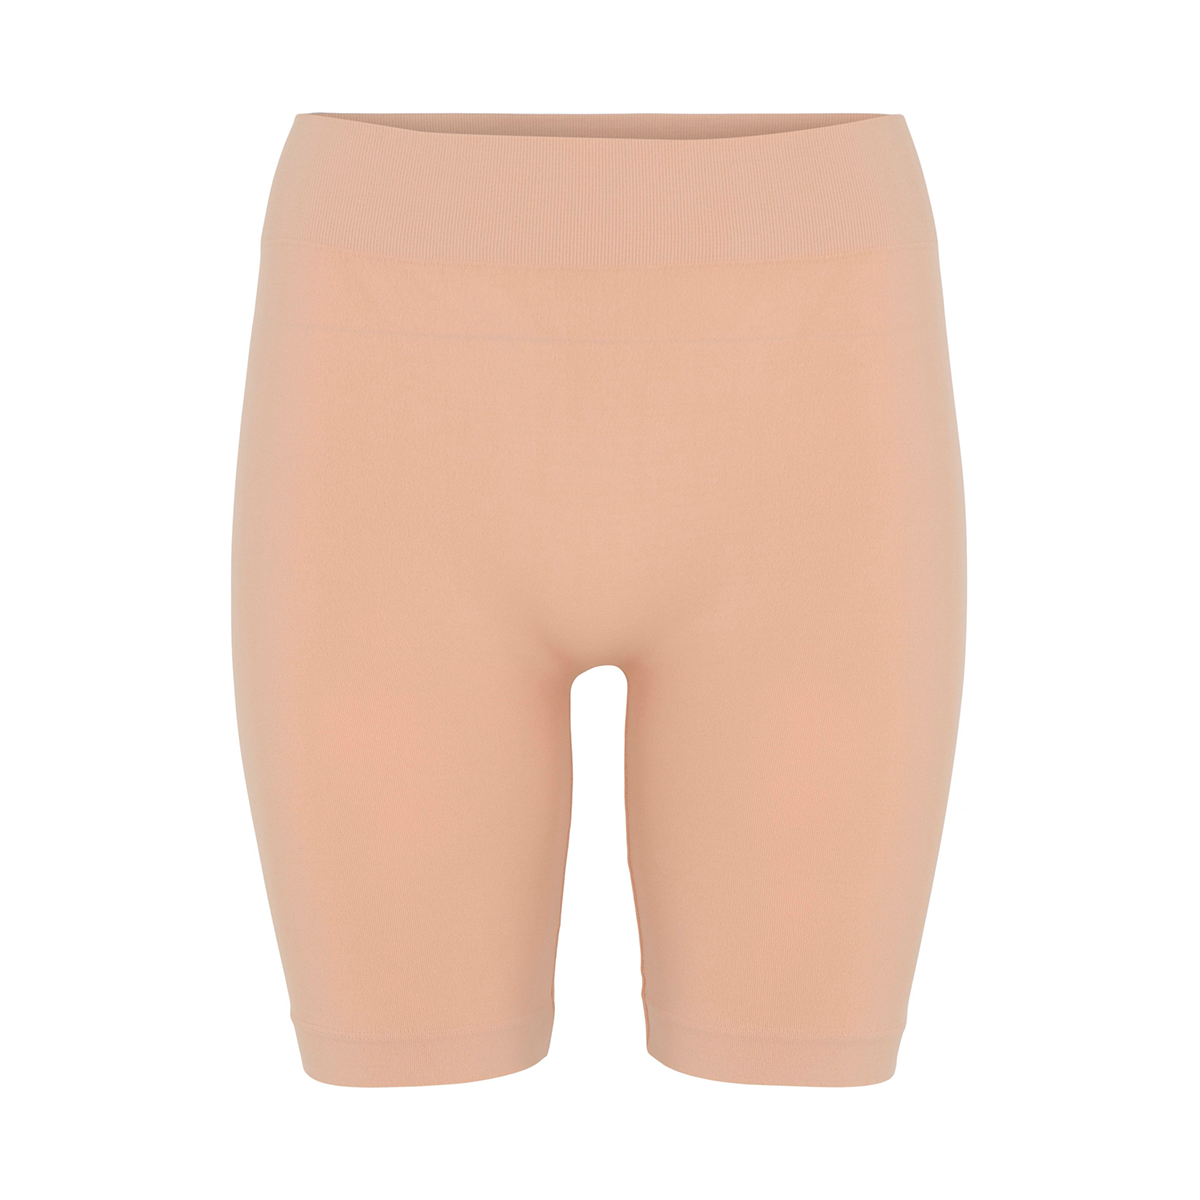 11: Decoy Seamless Shorts, Farve: Beige, Størrelse: S/M, Dame